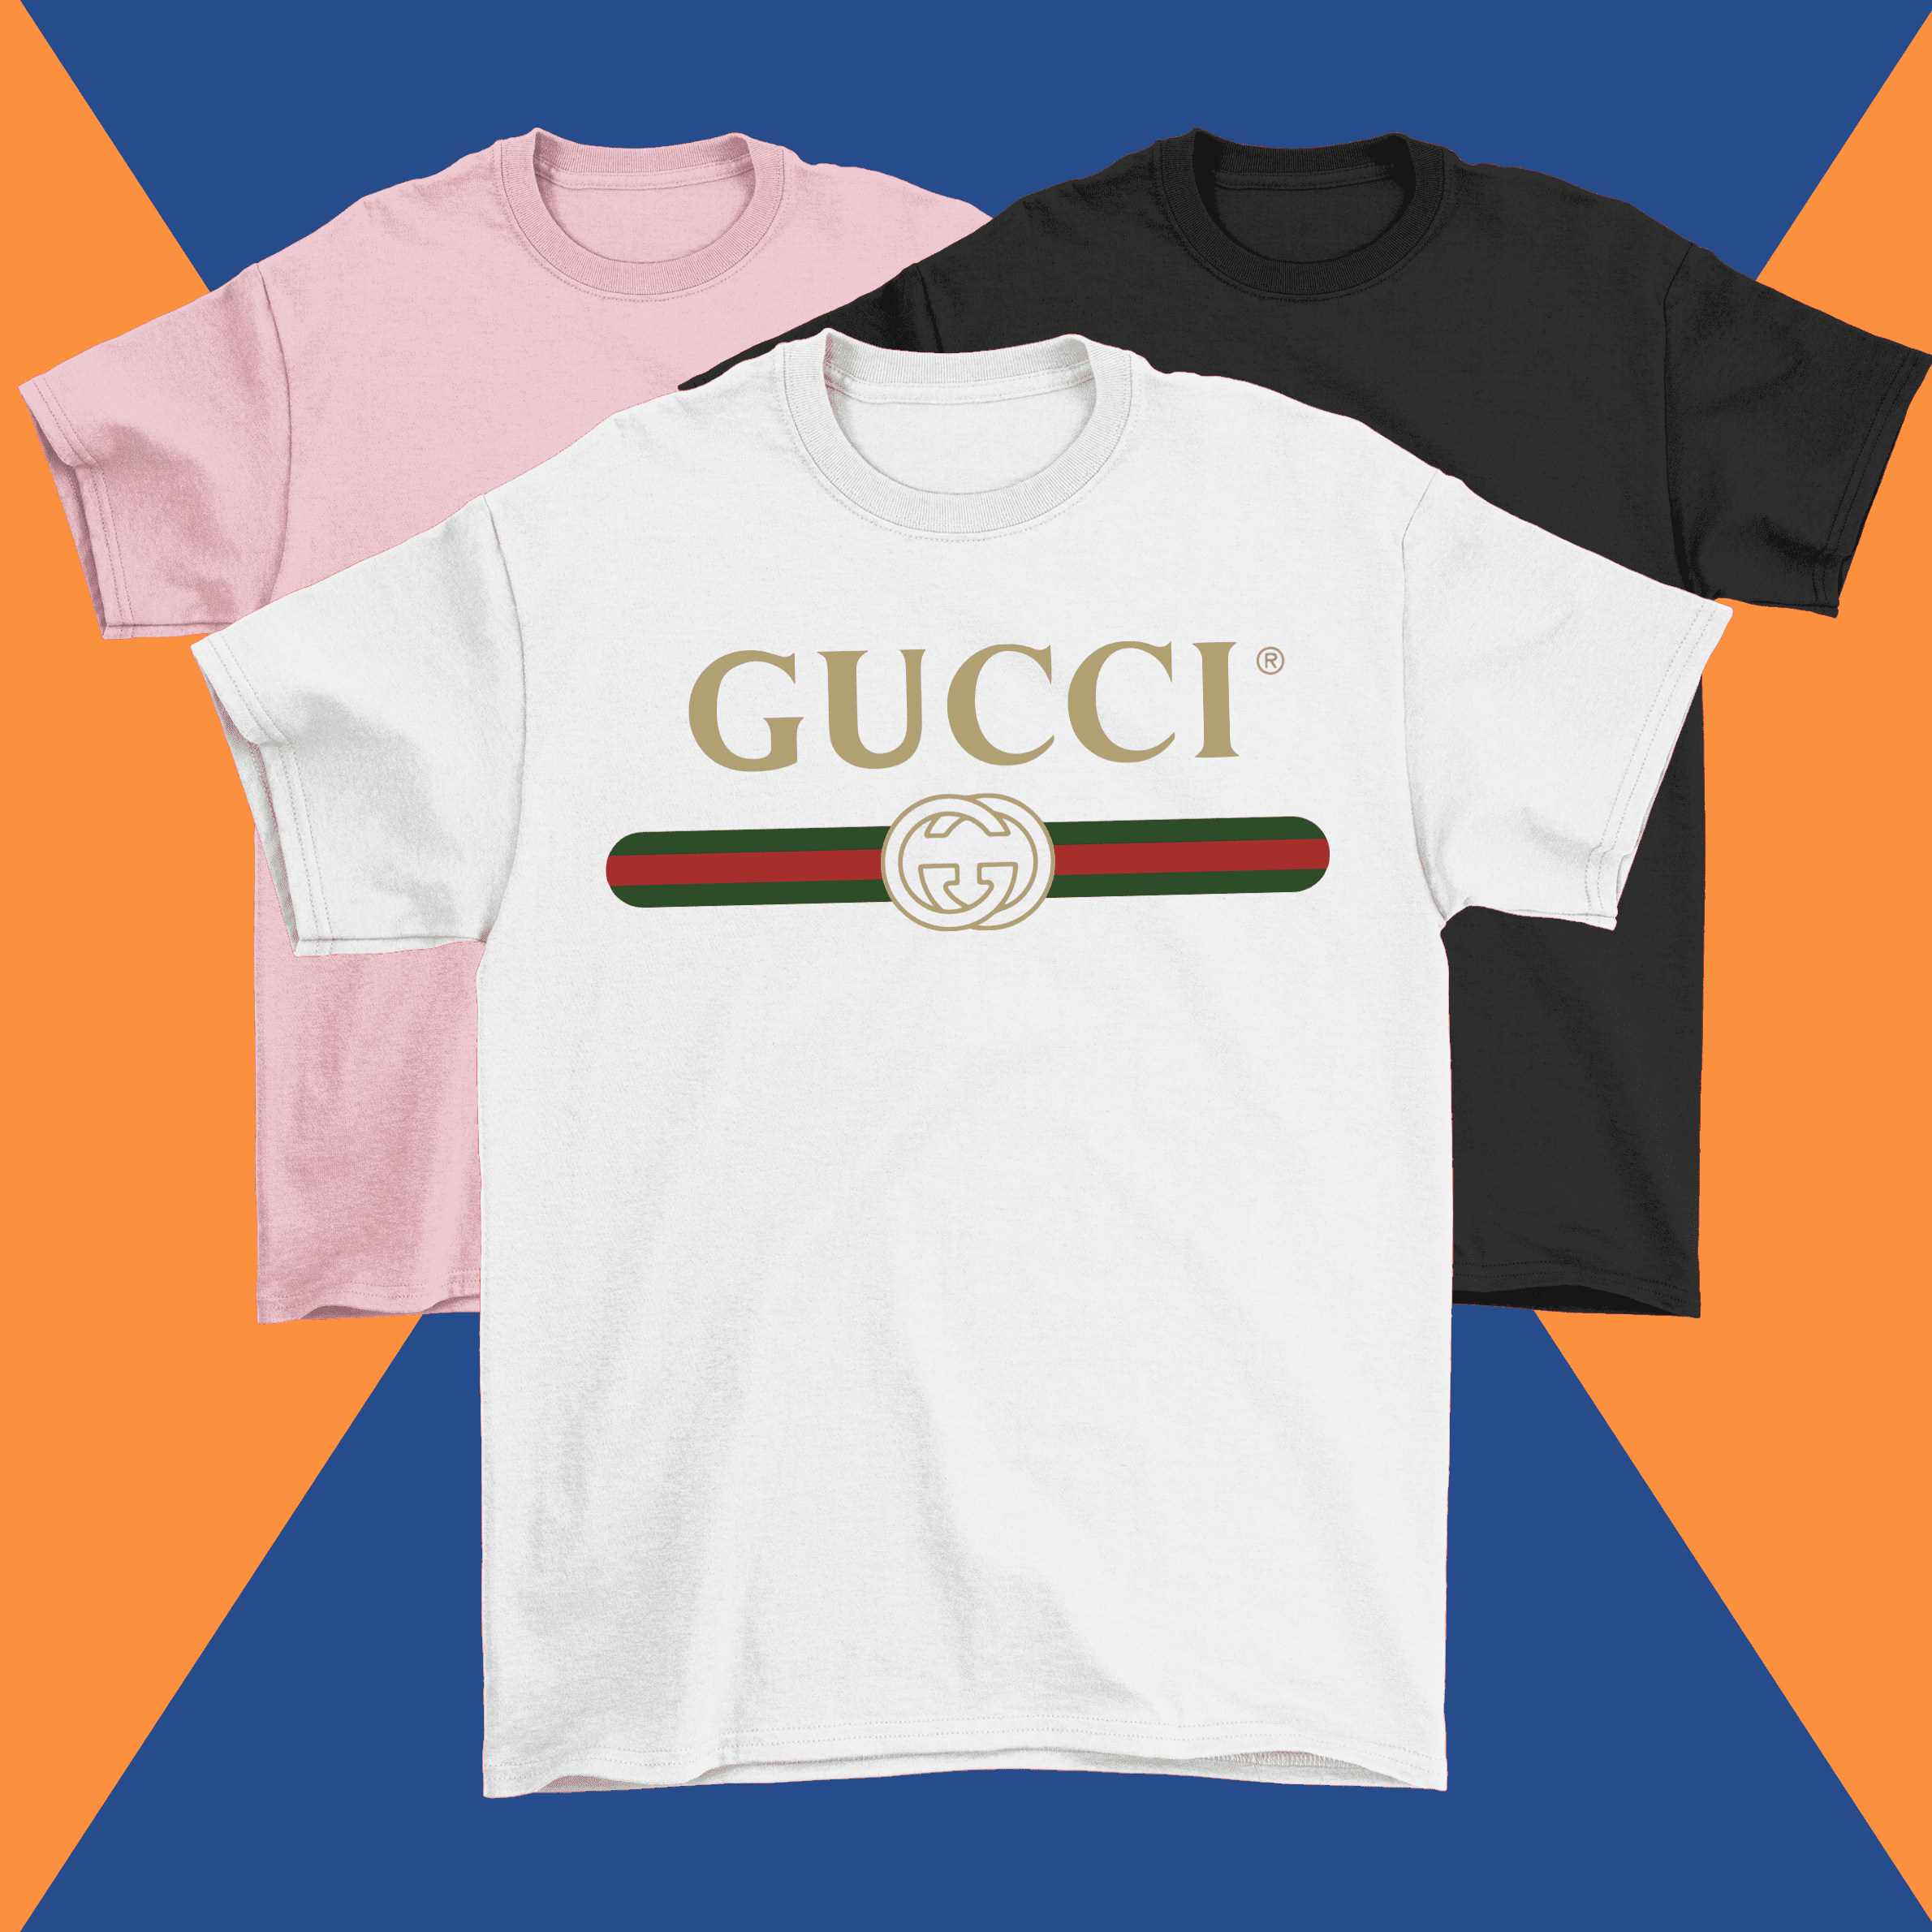 Gucci T-Shirt – Crafty Ink